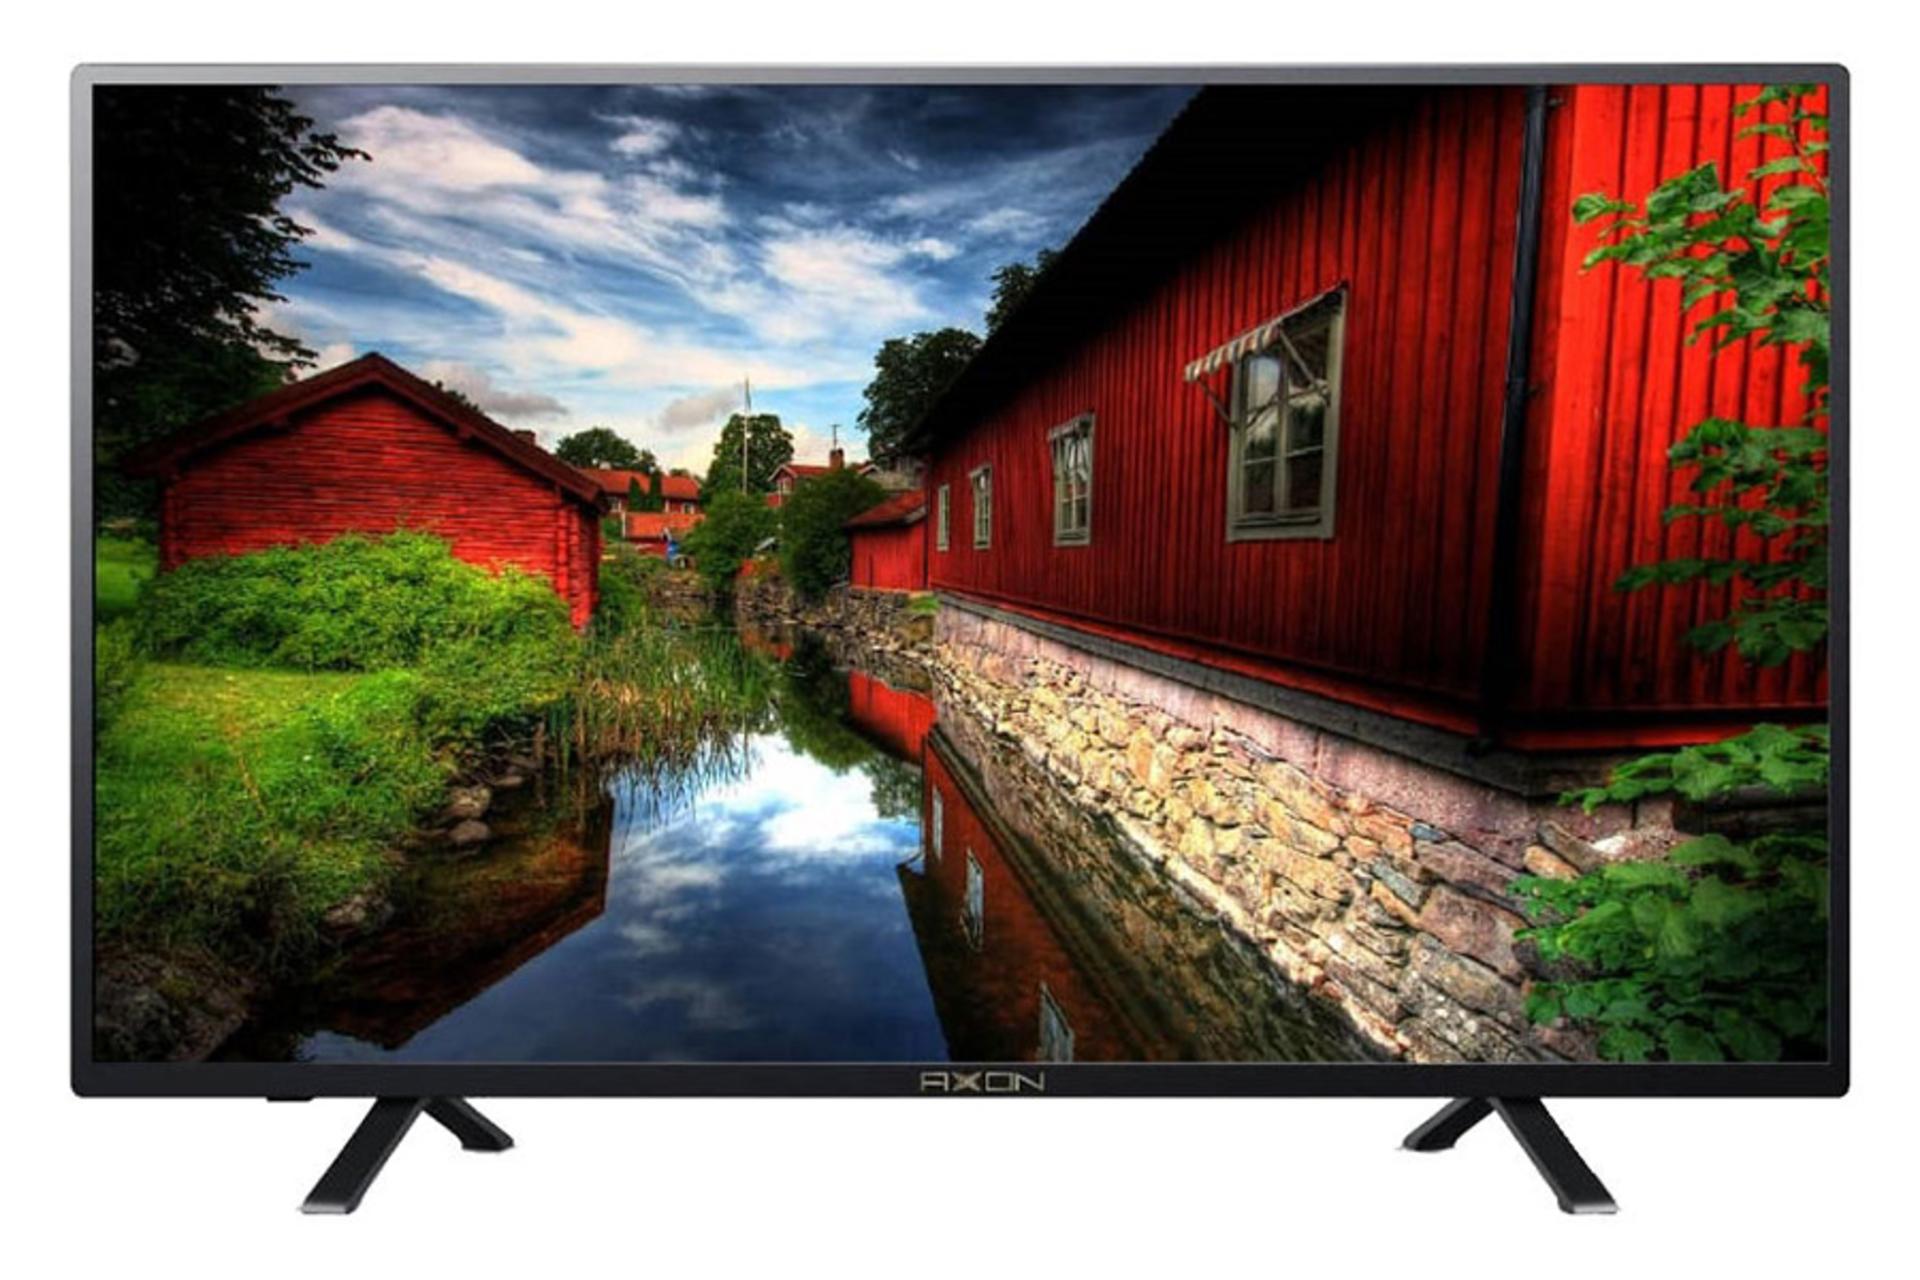 نمای جلو تلویزیون آکسون XT-4390S مدل 43 اینچ با صفحه روشن